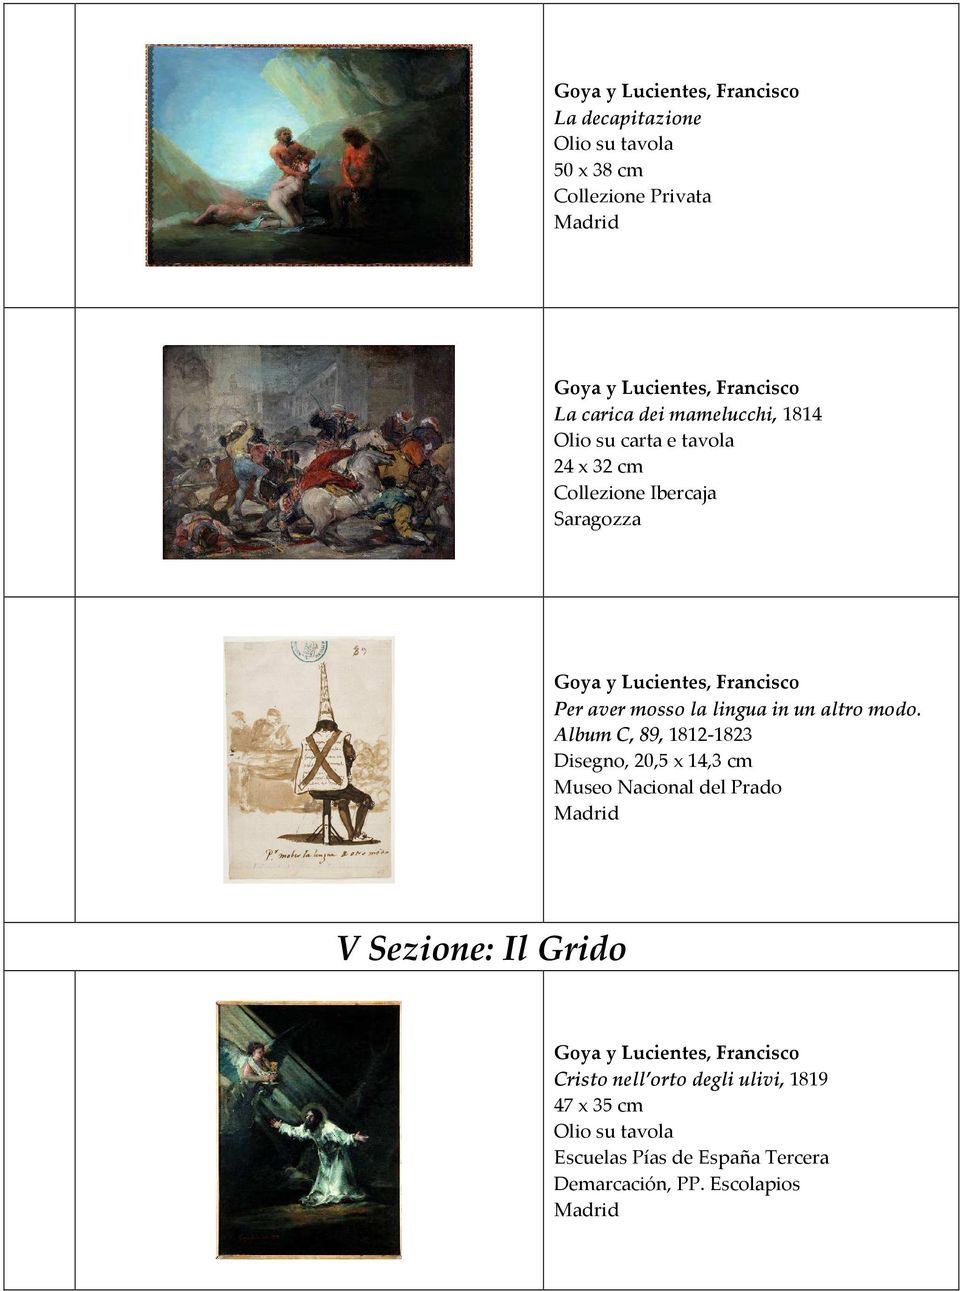 Album C, 89, 1812-1823 Disegno, 20,5 x 14,3 cm Museo Nacional del Prado V Sezione: Il Grido Cristo